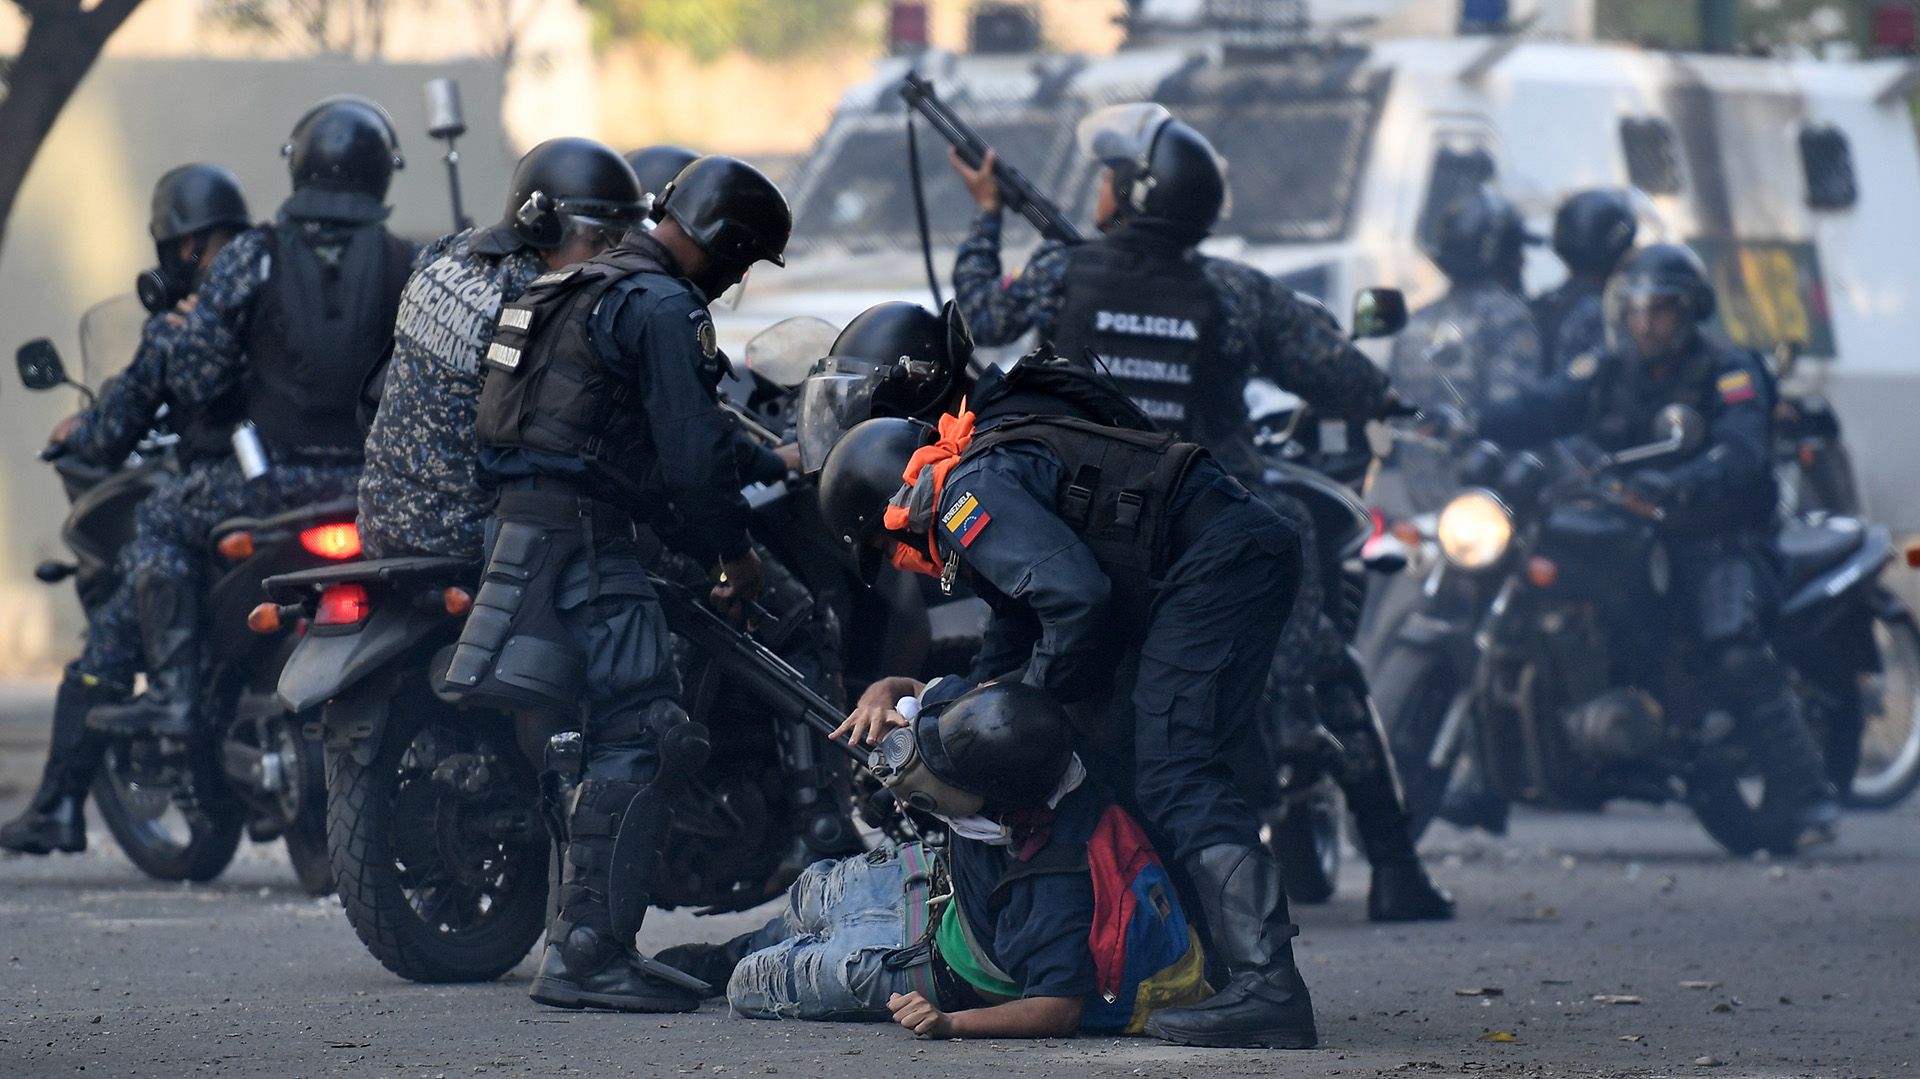 La Guardia Nacional Bolivariana reprime a manifestantes en una marcha en Venezuela (Photo by Federico PARRA / AFP)